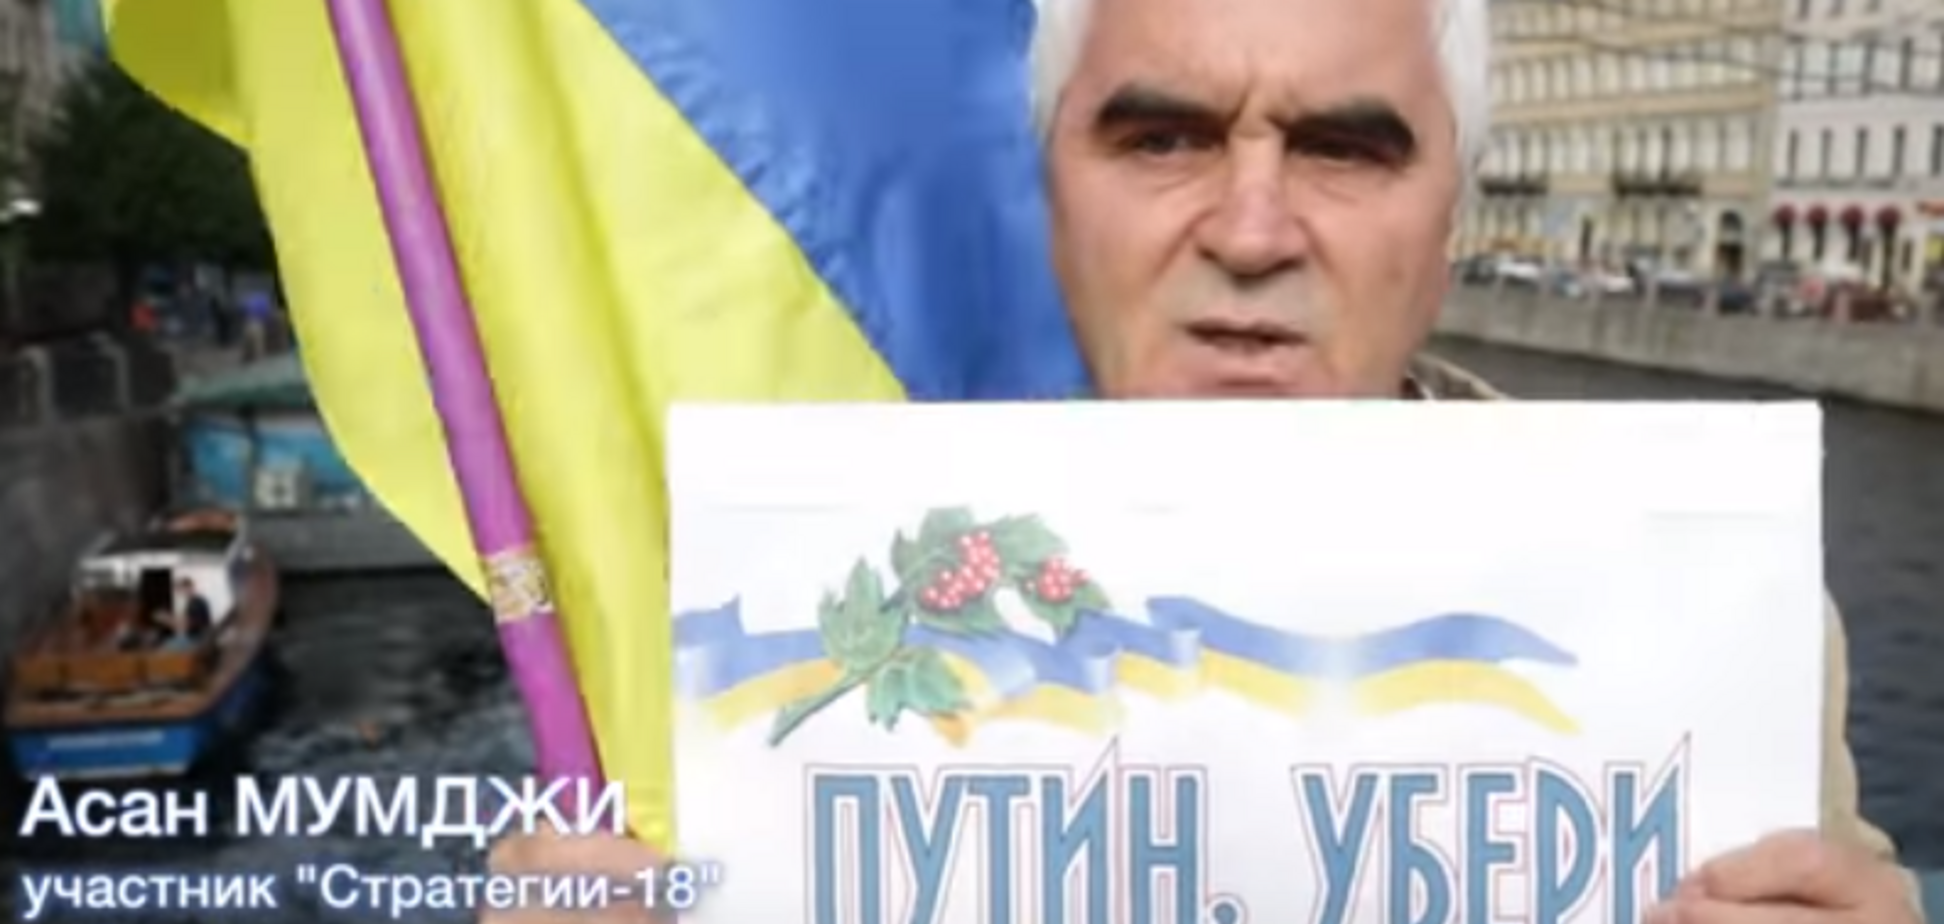 'Ми для них окупанти': у мережі показали, як росіяни реагують на прапор України